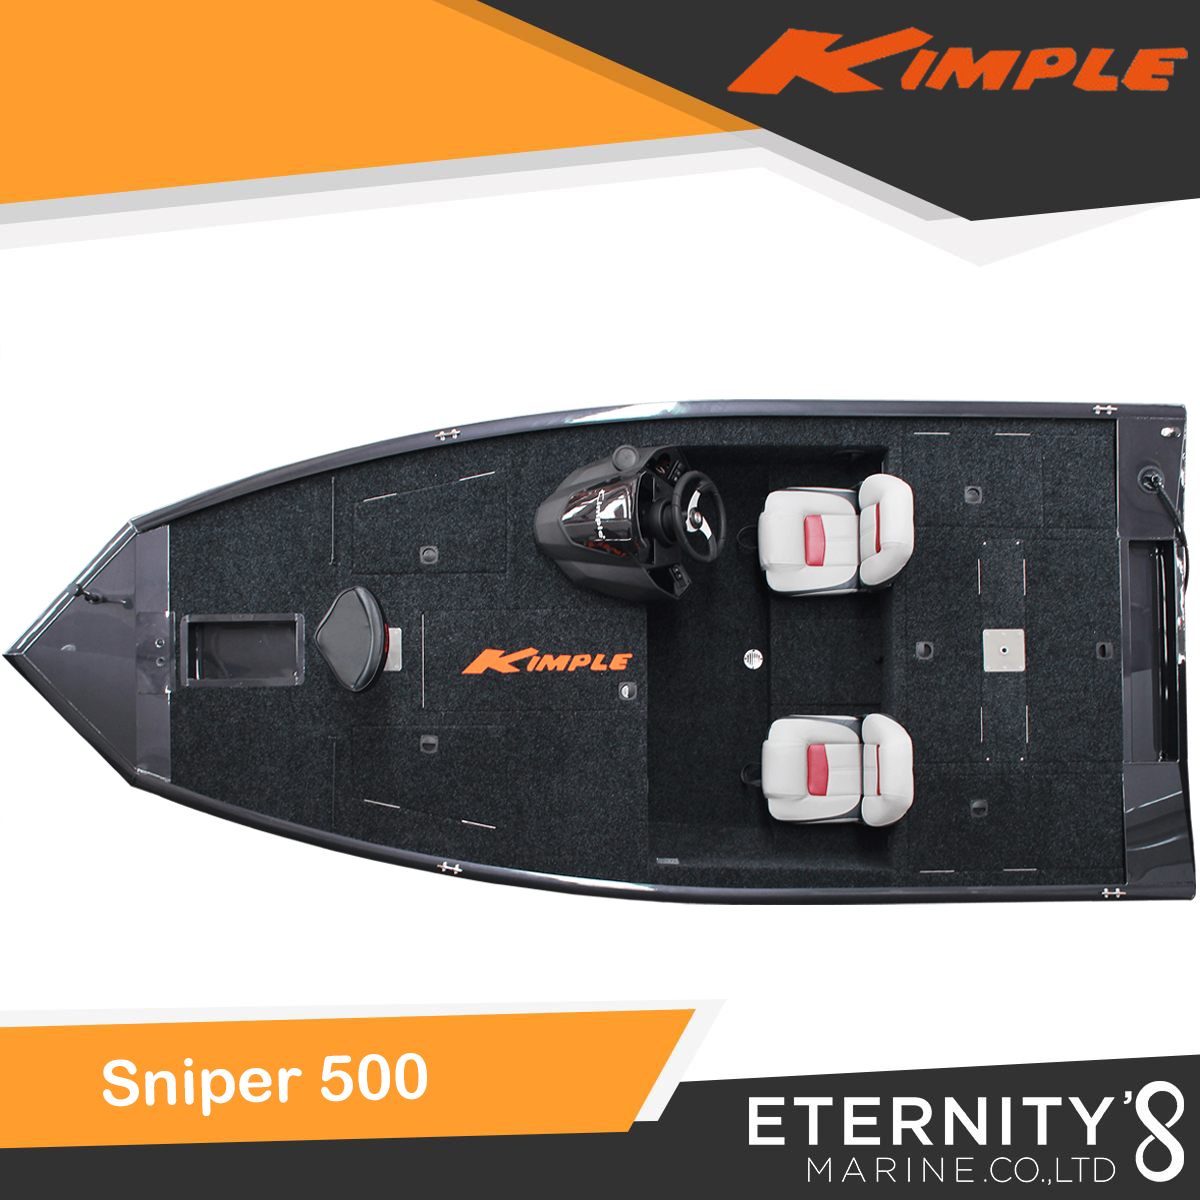 Kimple Sniper 500